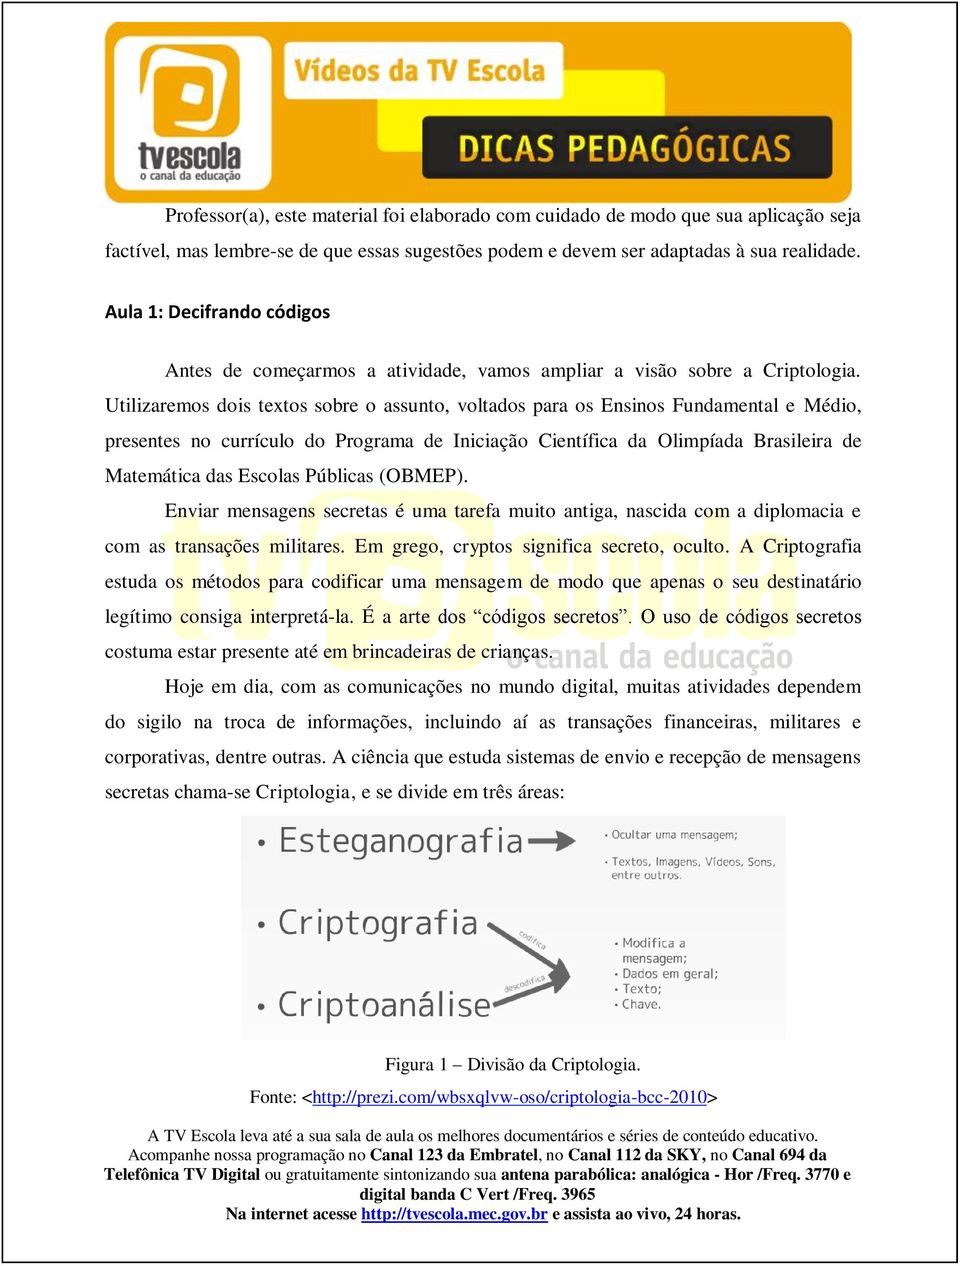 Utilizaremos dois textos sobre o assunto, voltados para os Ensinos Fundamental e Médio, presentes no currículo do Programa de Iniciação Científica da Olimpíada Brasileira de Matemática das Escolas